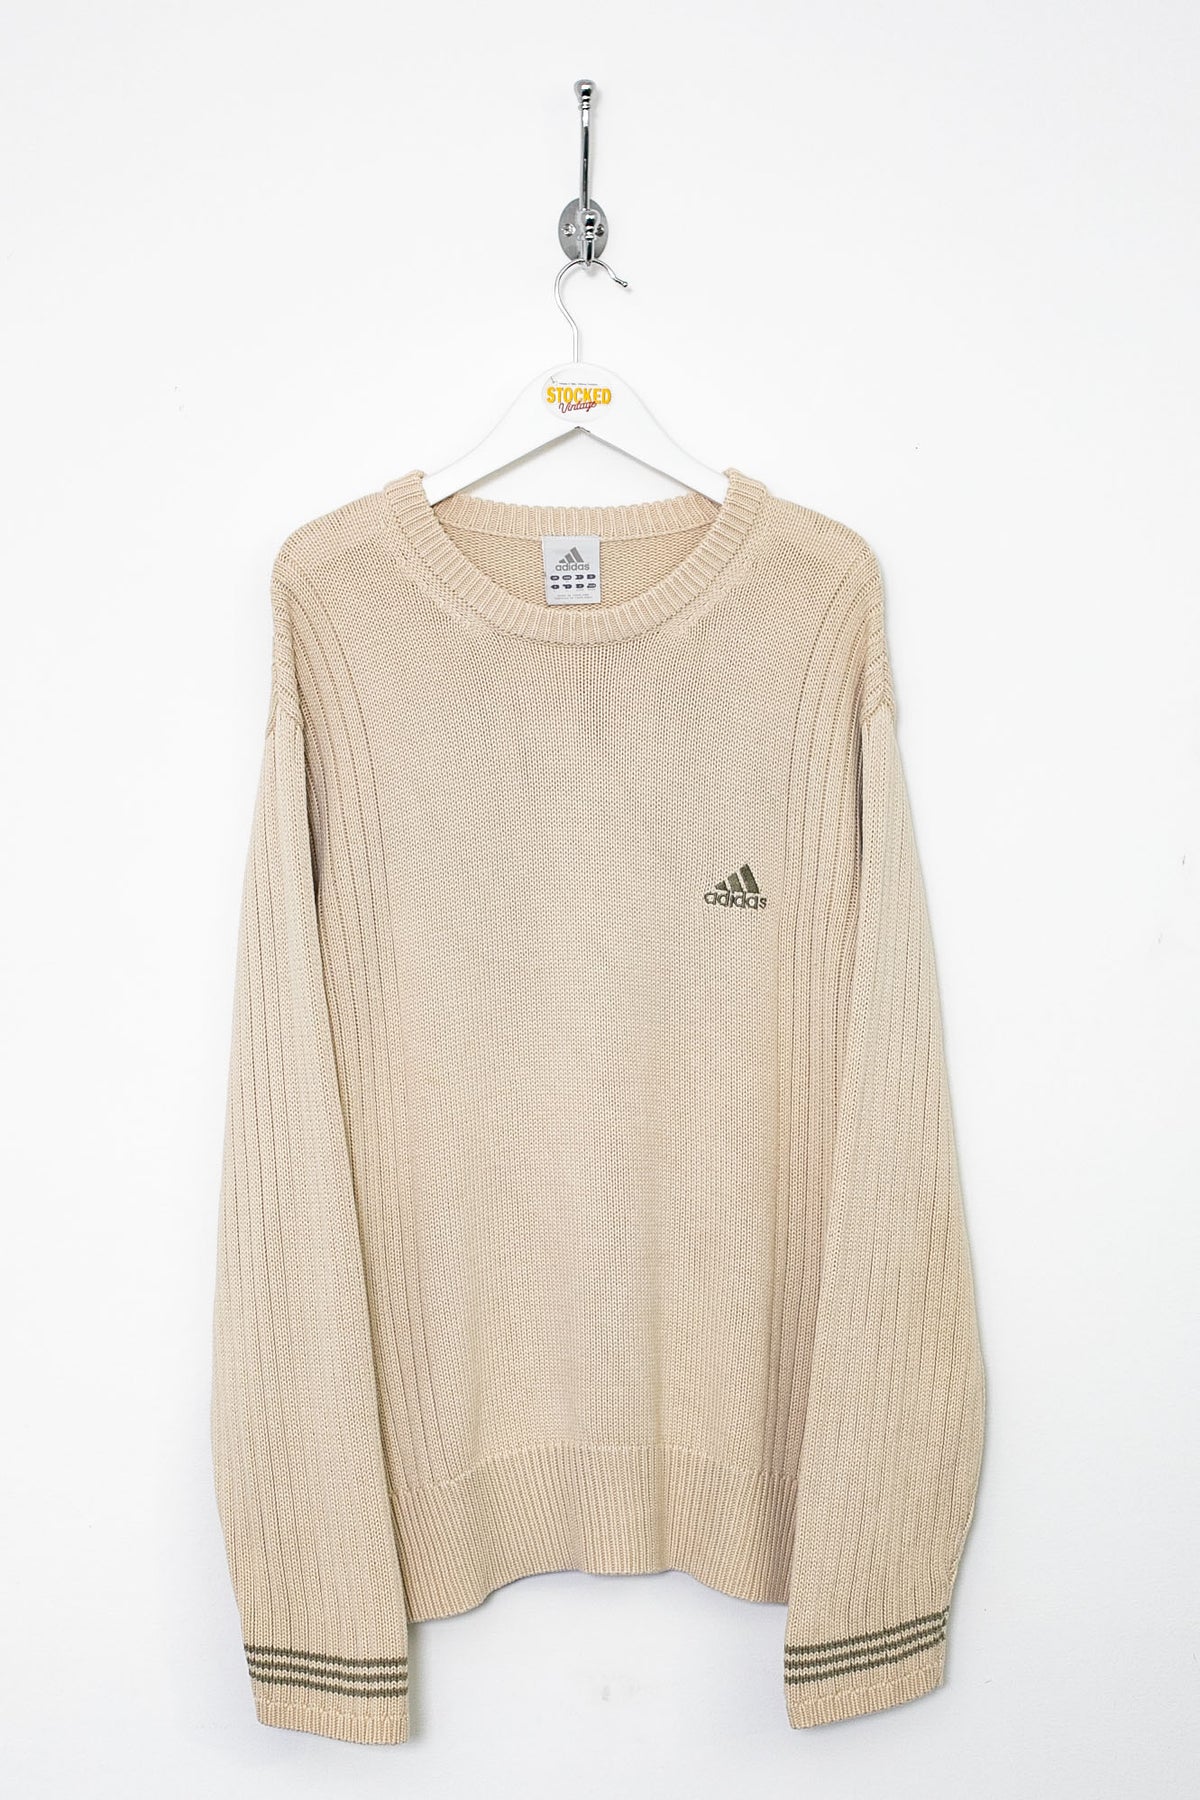 00s Adidas Knit Jumper (L)